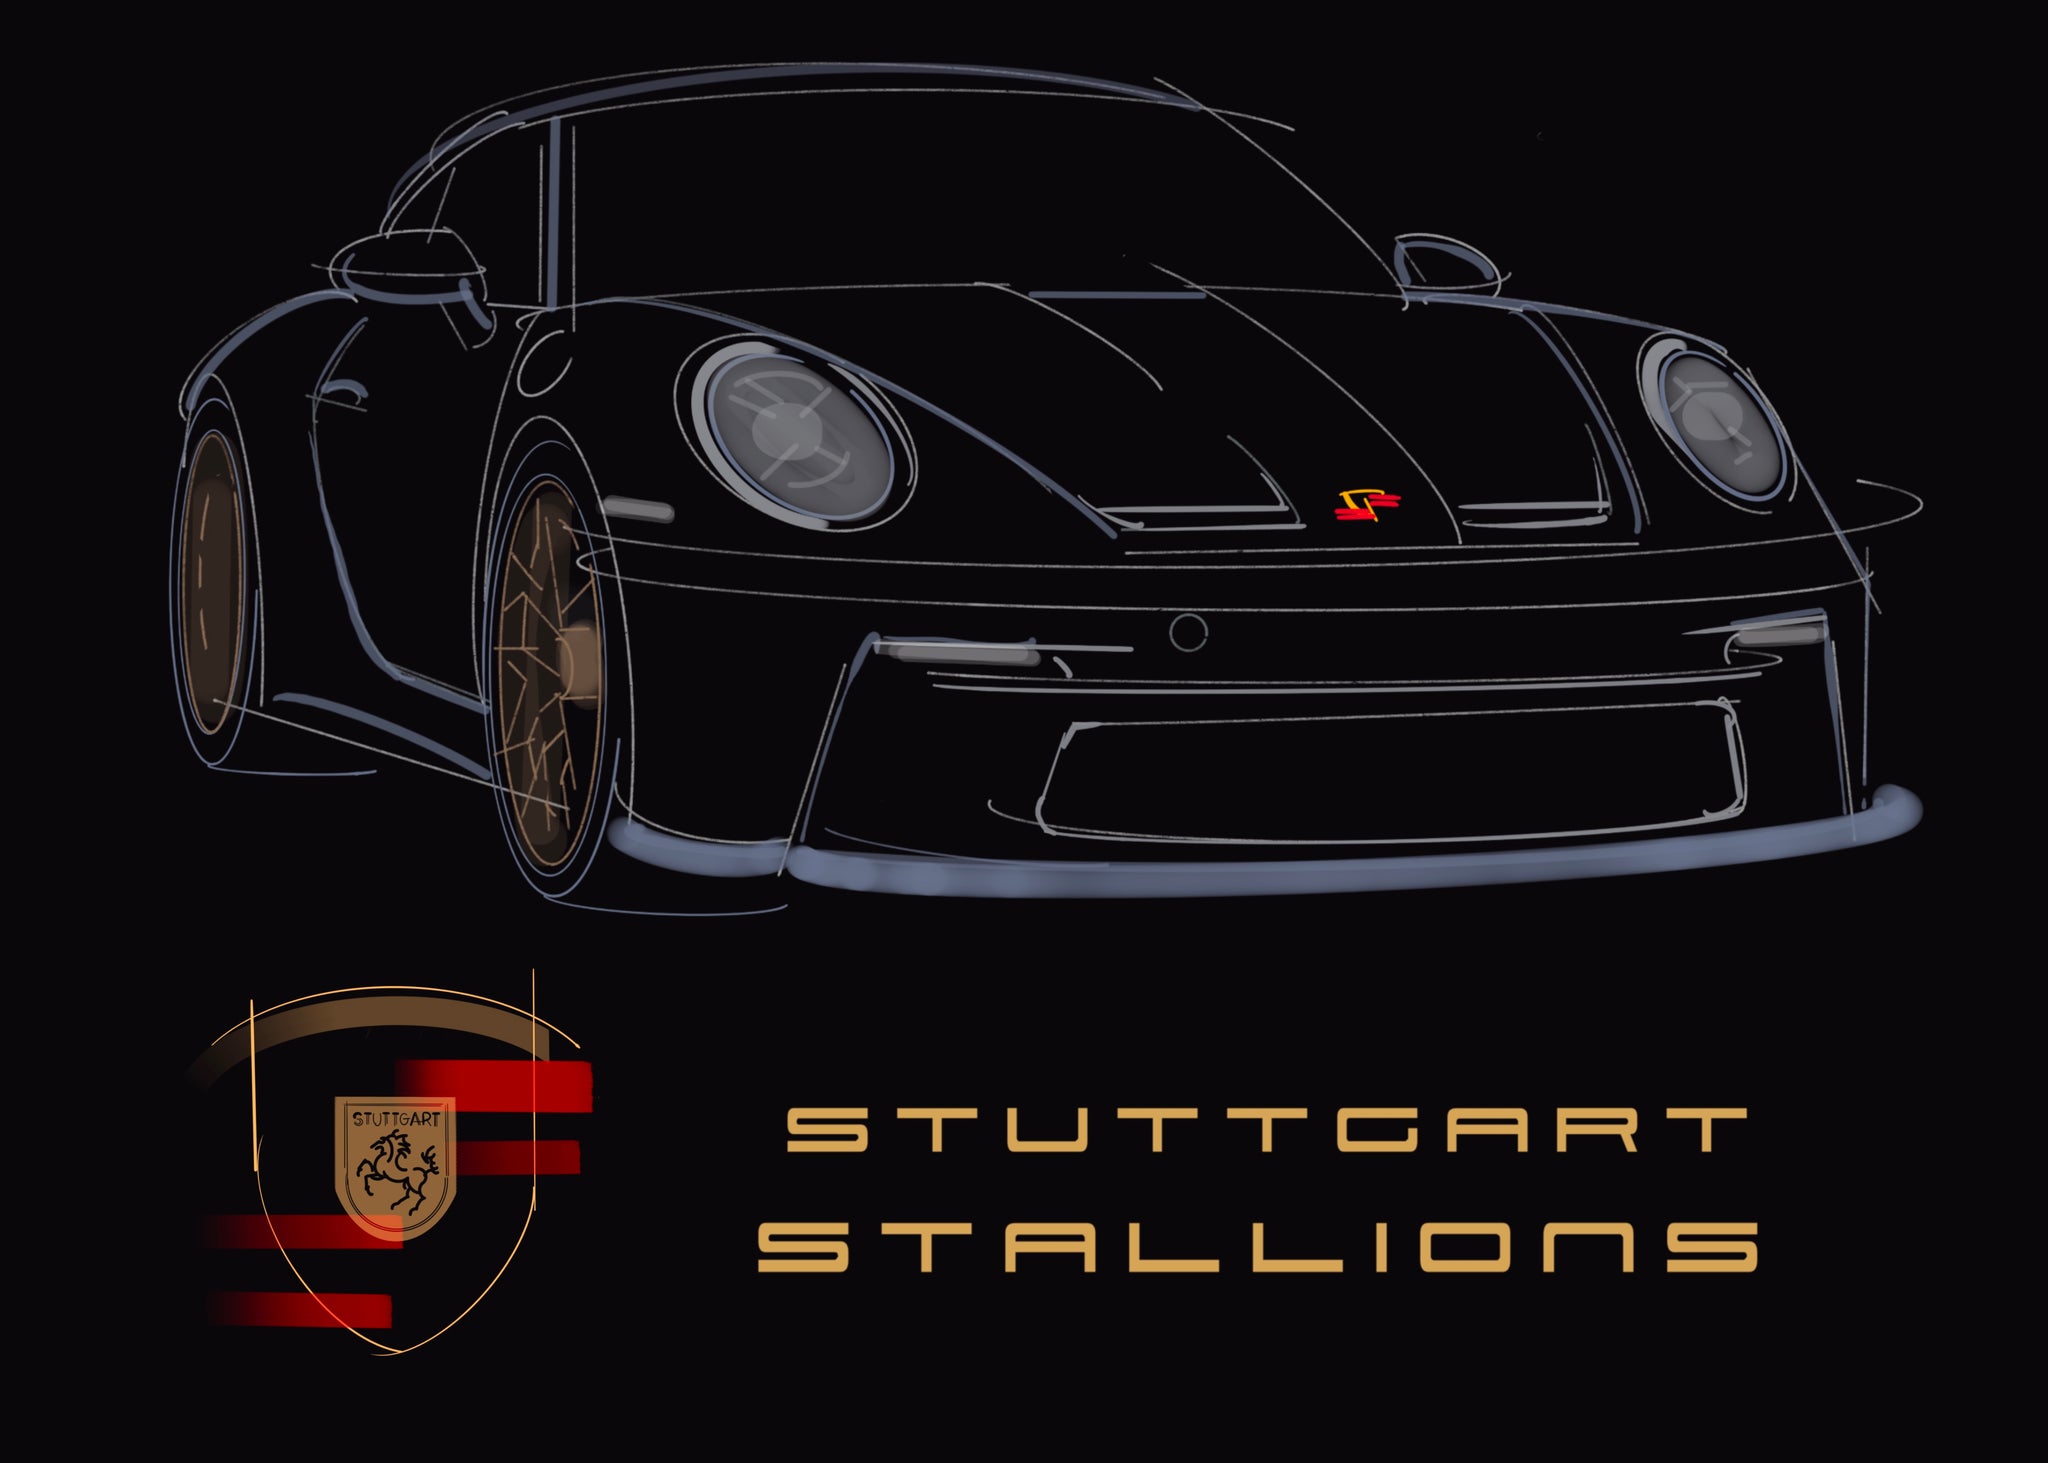 GT3 Touring Stuttgart Stallions